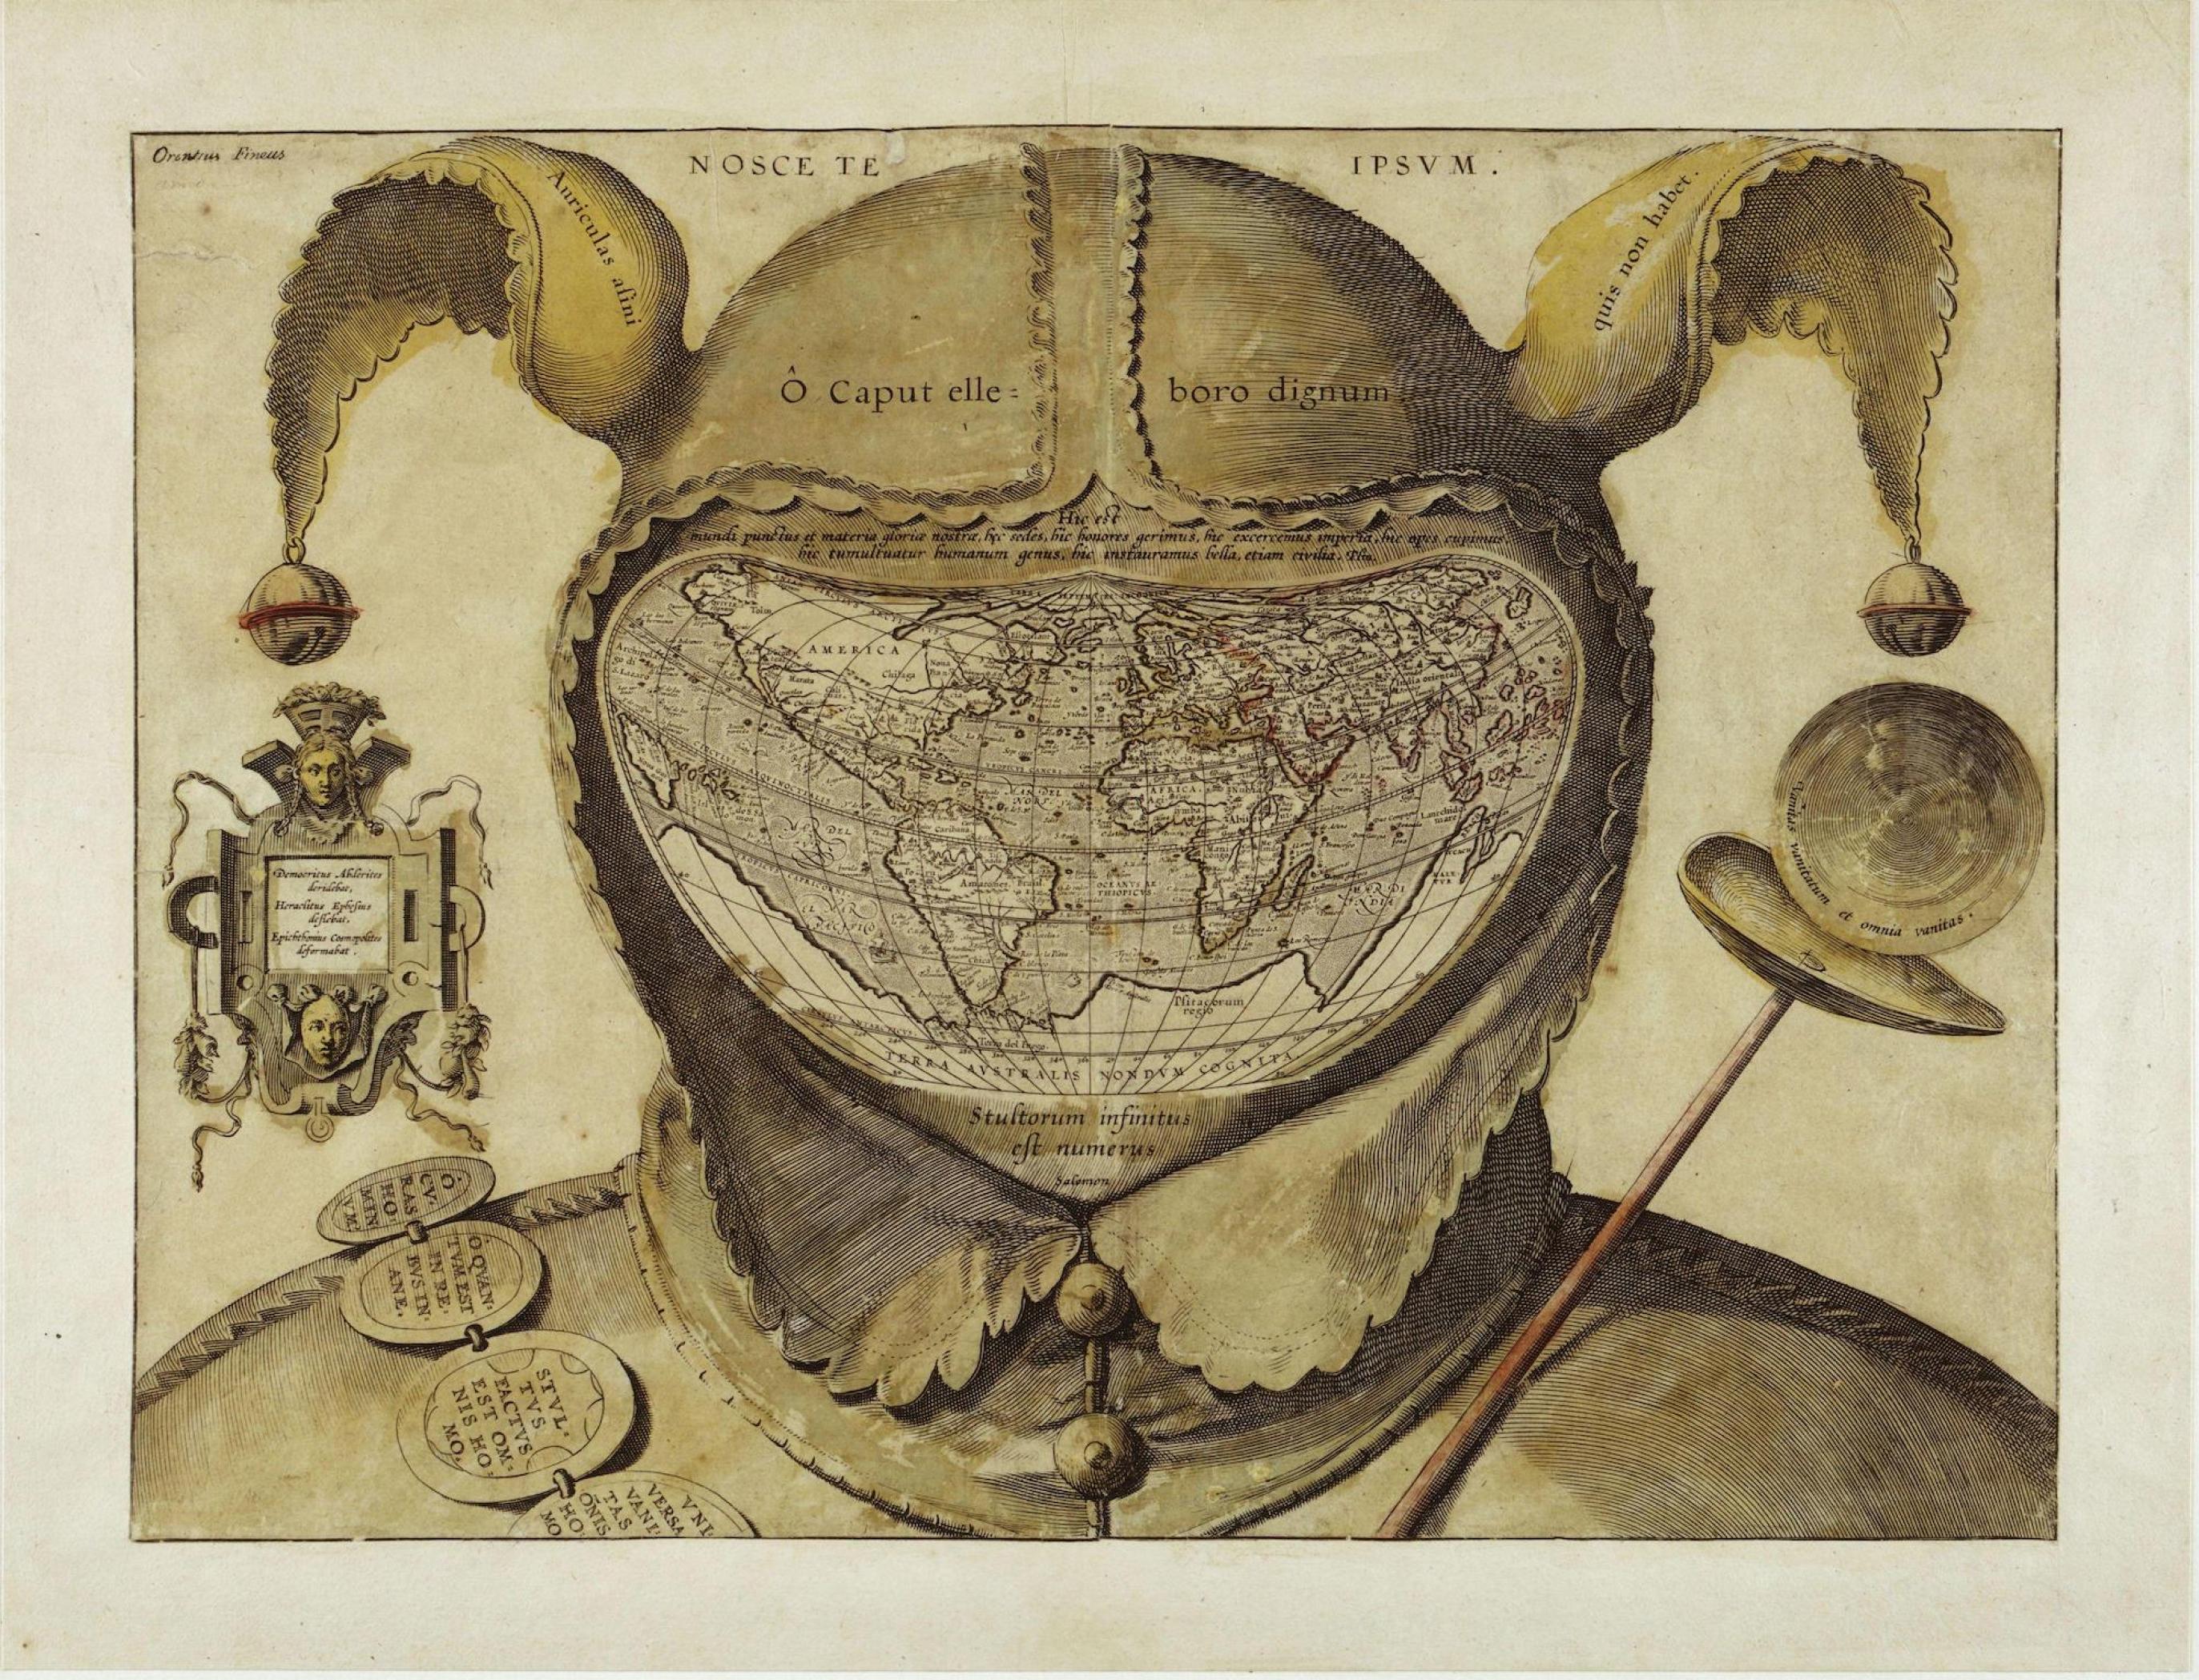 Bild des Künstlers Jean de Gourmont. Zu sehen ist das Portrait eines klassischen Narren. Unter der Kappe befindet sich jedoch kein Gesicht sondern eine Weltkarte.